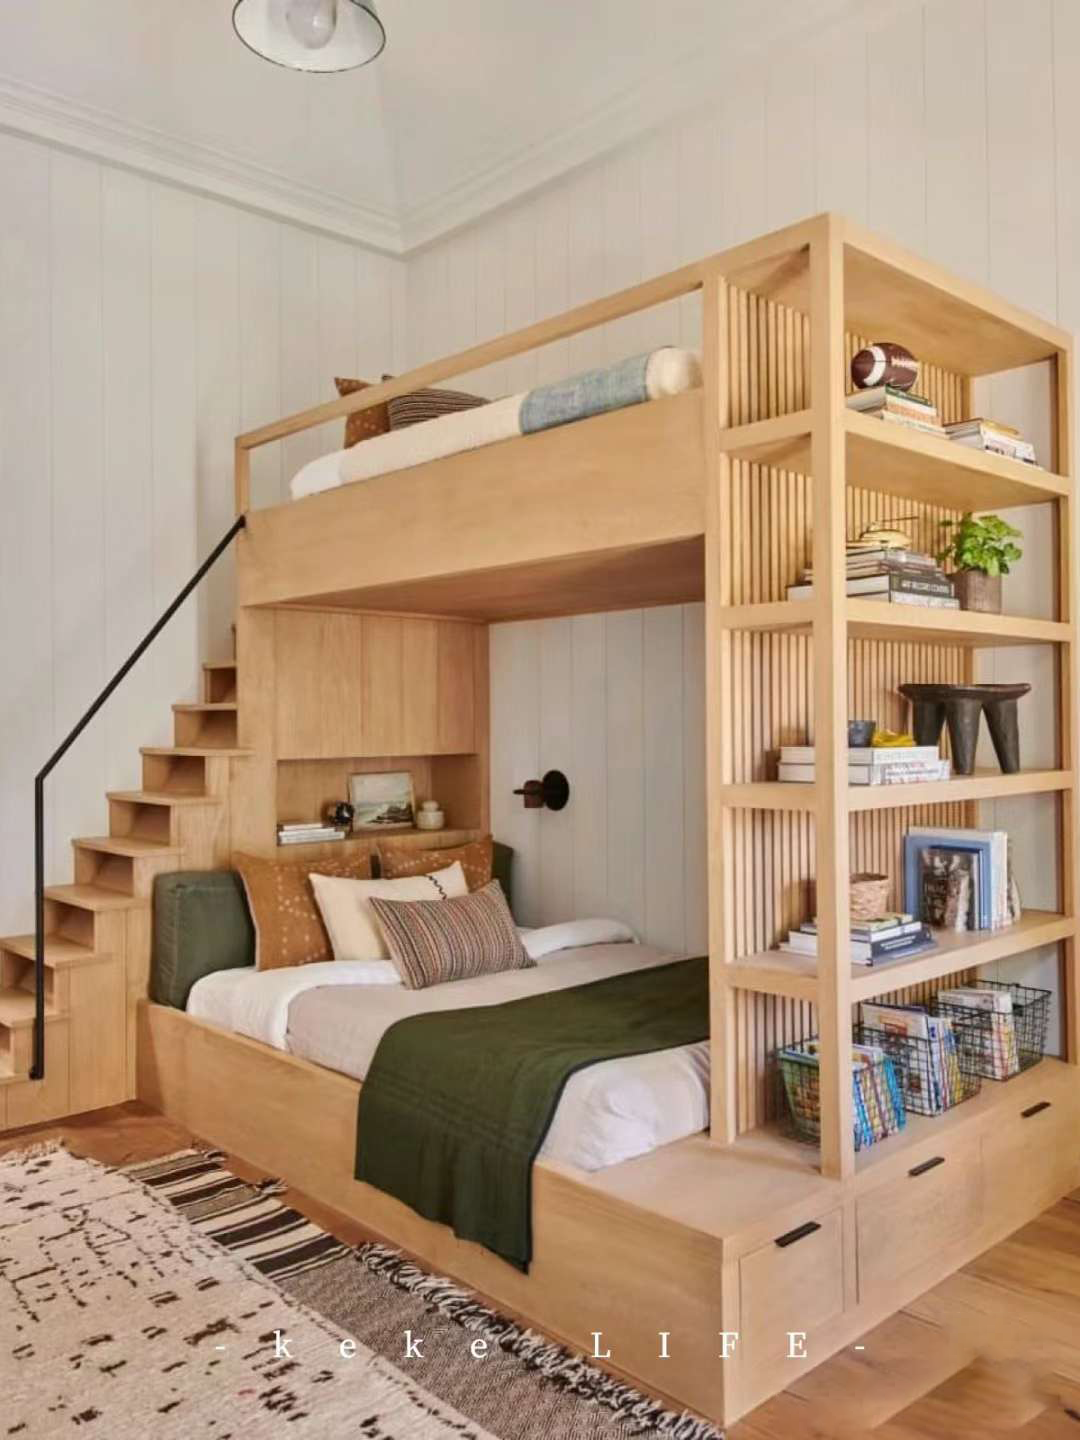 Giường tầng cho bố mẹ và con – giải pháp cho phòng ngủ diện tích nhỏ